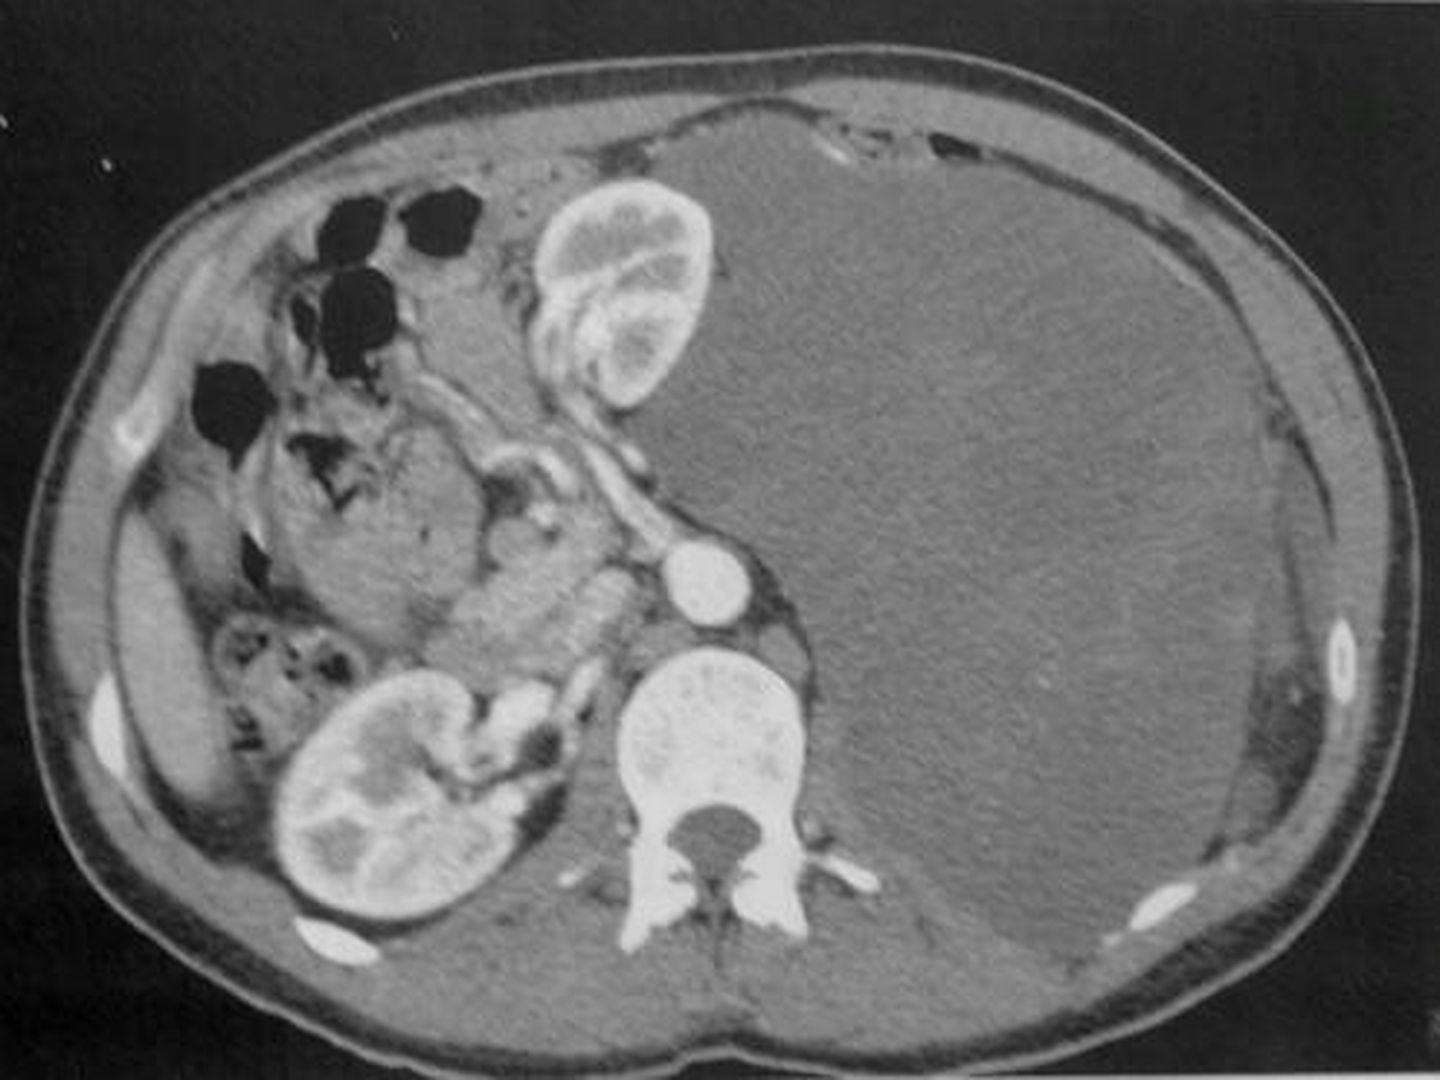 Sarcoma retroperitoneal, de origen en el tejido graso (liposarcoma), que ocupa toda la cavidad abdominal, ha desplazado el riñón izquierdo hacia arriba y roza la arteria aorta. (Foto cedida por el QTI)